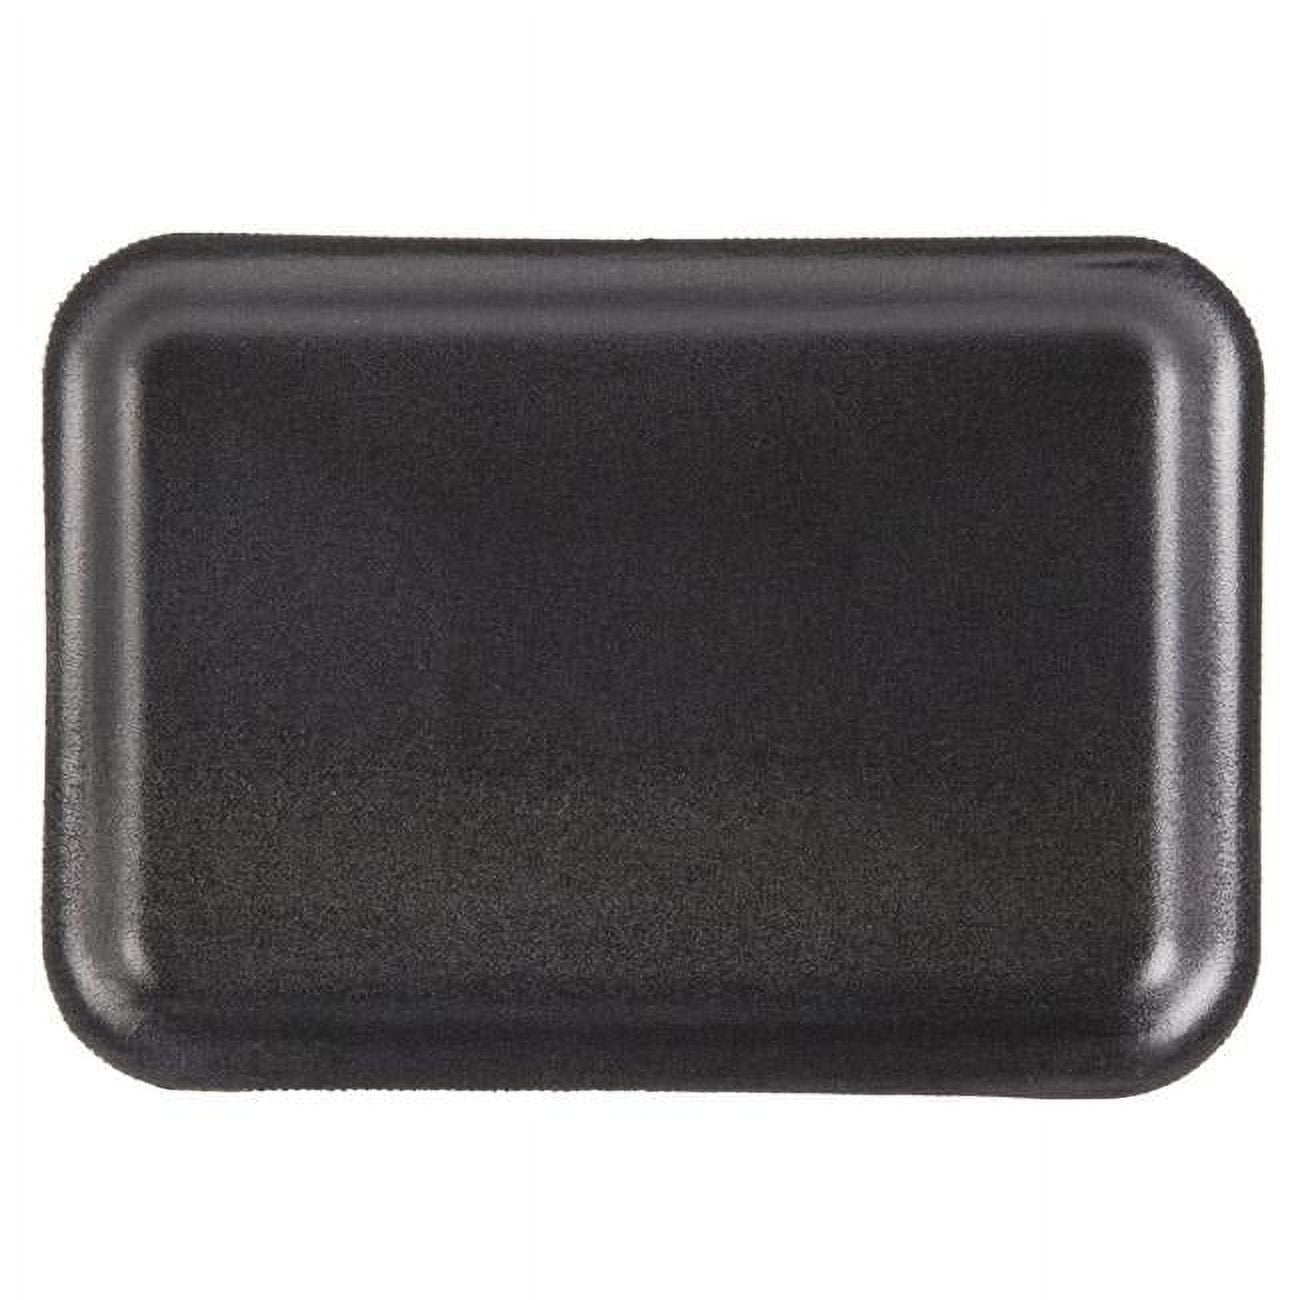 201017sn00 Cpc Foam Tray, Black - Case Of 1000